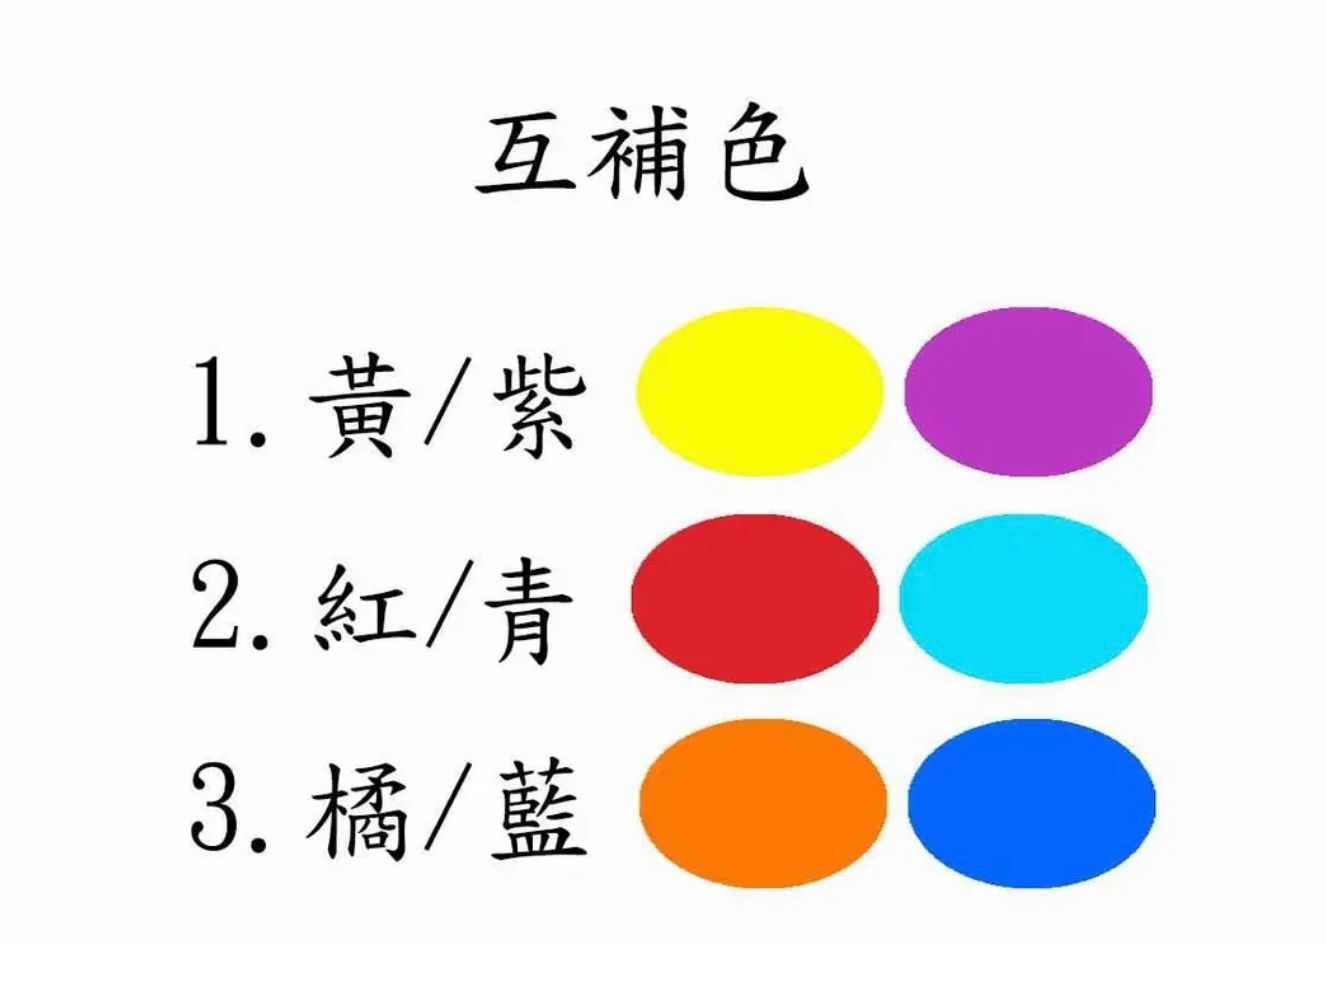 三 組顏色供選擇｣三=